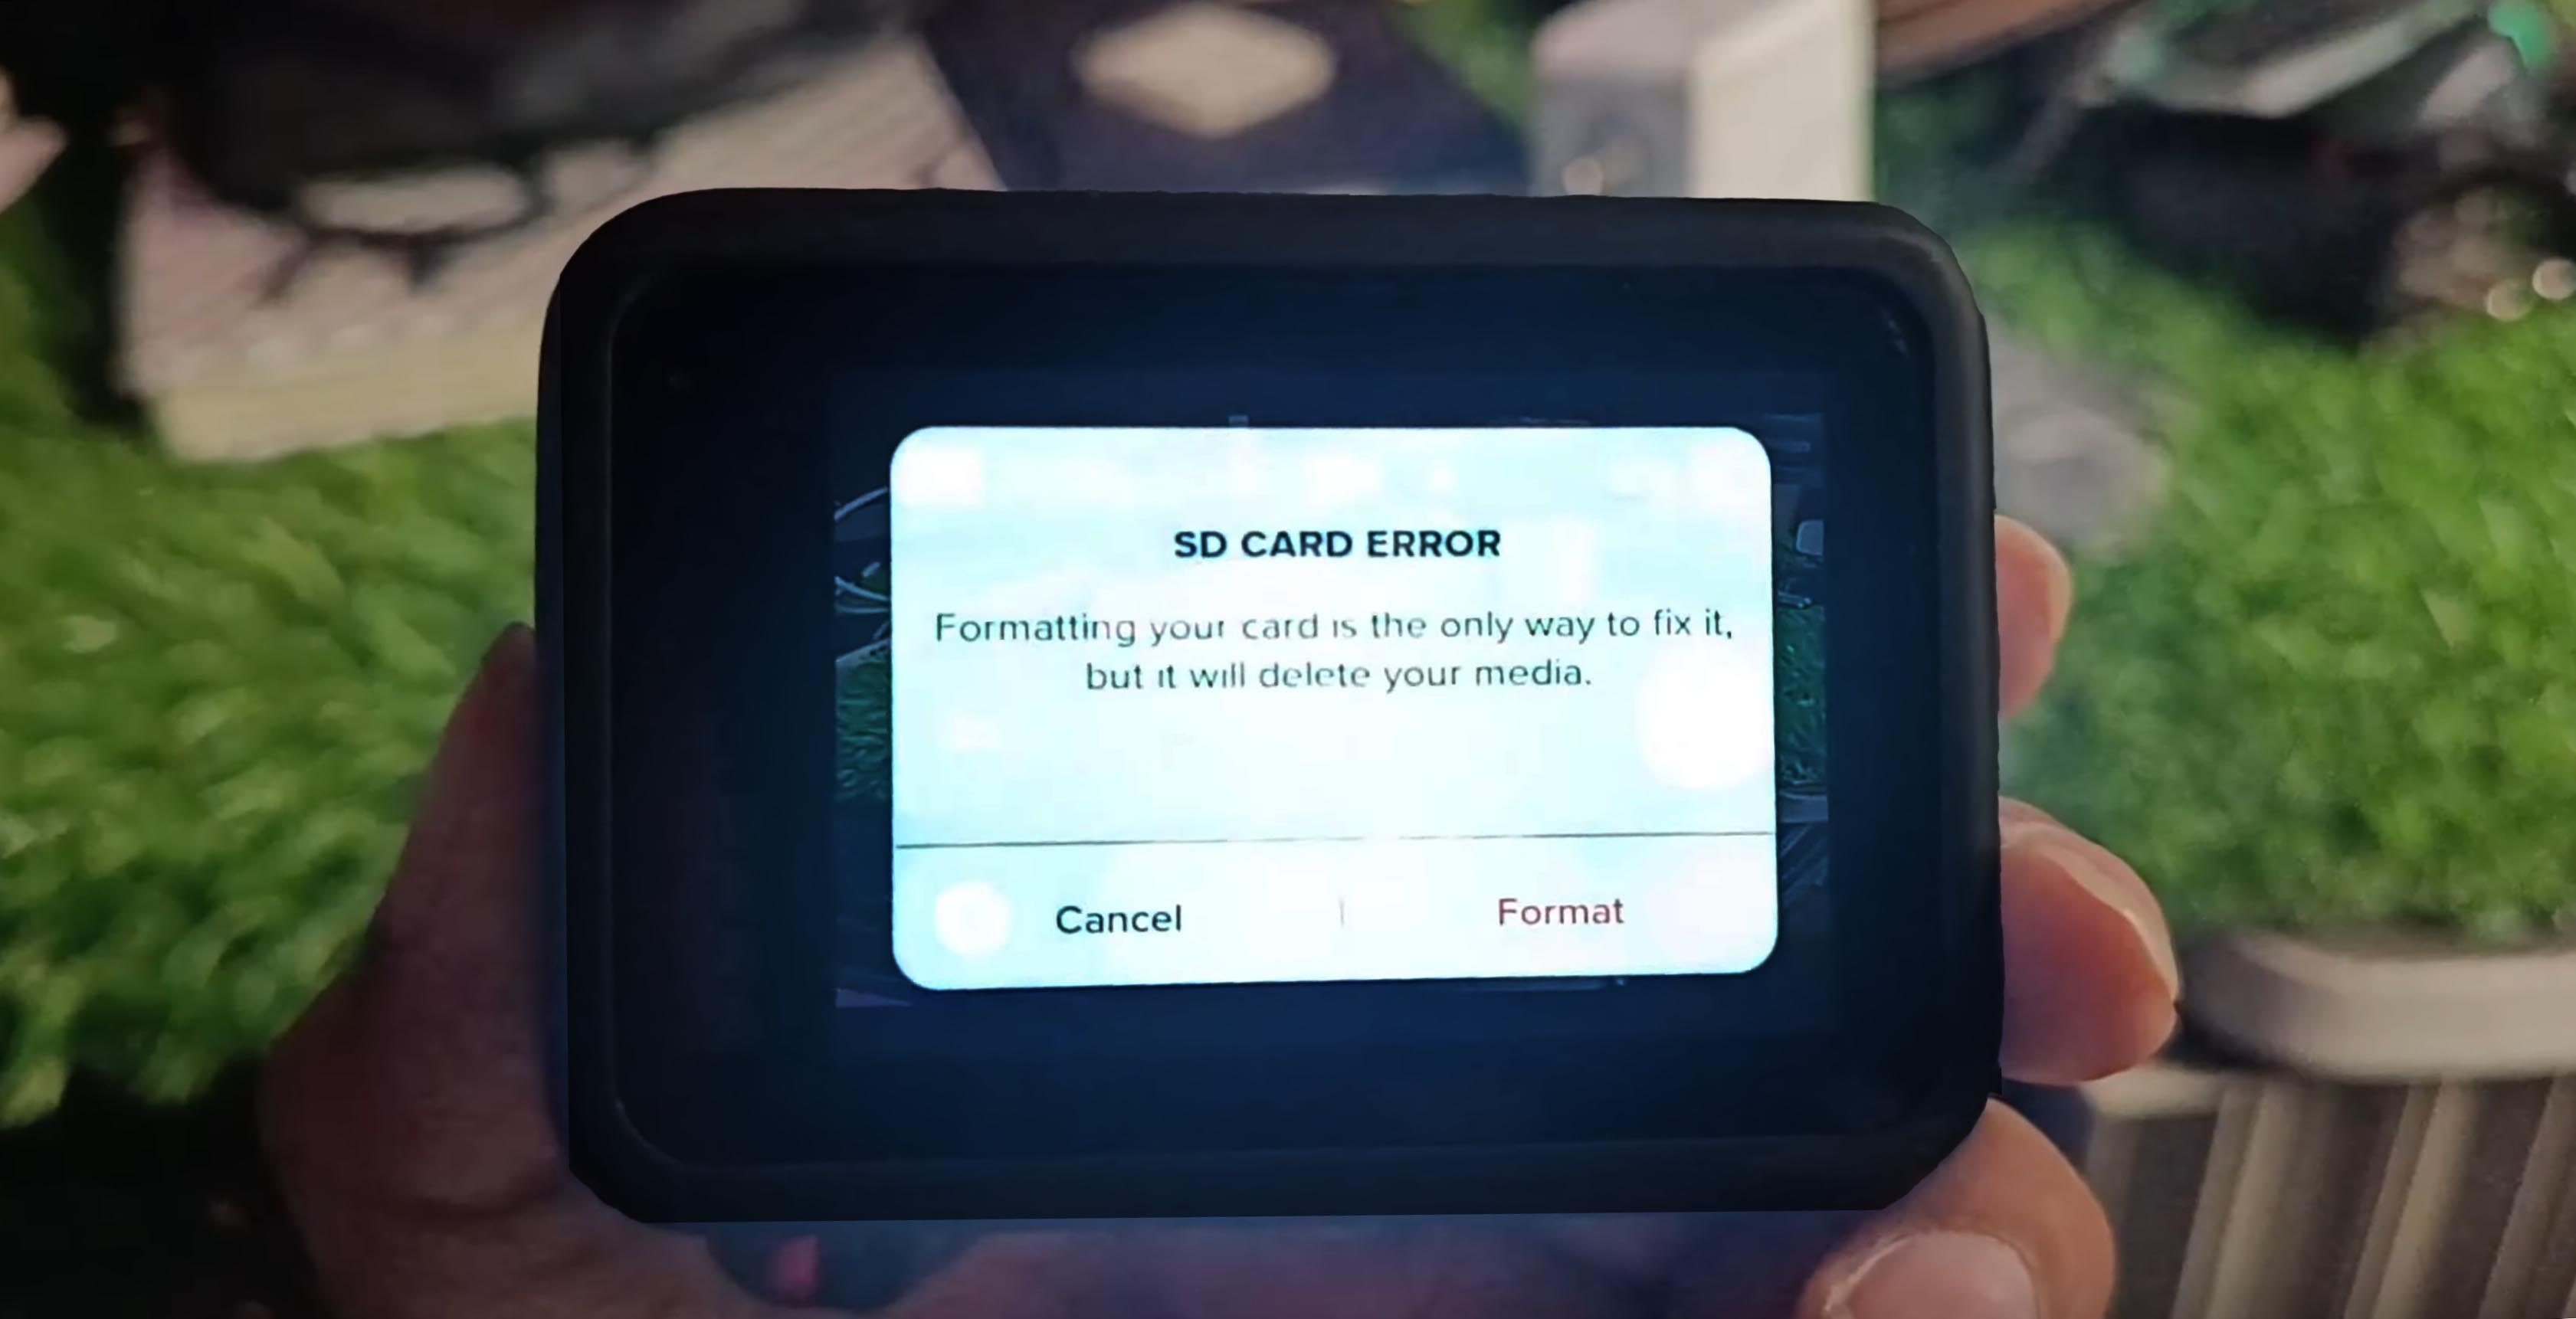 GoPro SD CARD ERROR message